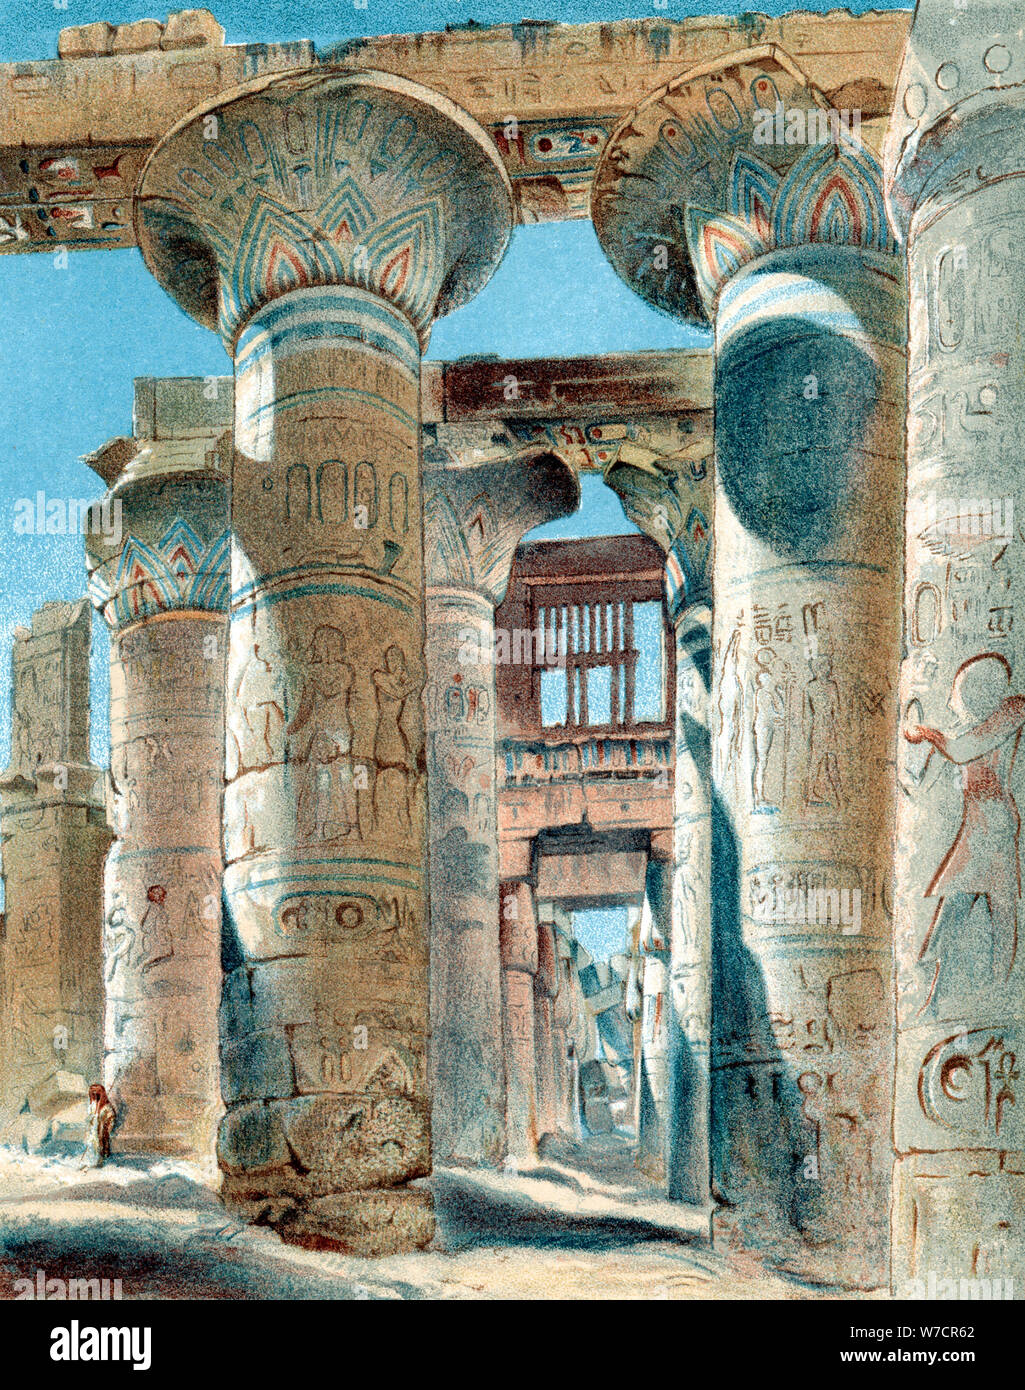 Salle hypostyle, temple d'Amon-Re, Karnak, Egypte antique, 14ème-13ème siècle avant J.-C. (1892). Artiste : Inconnu Banque D'Images